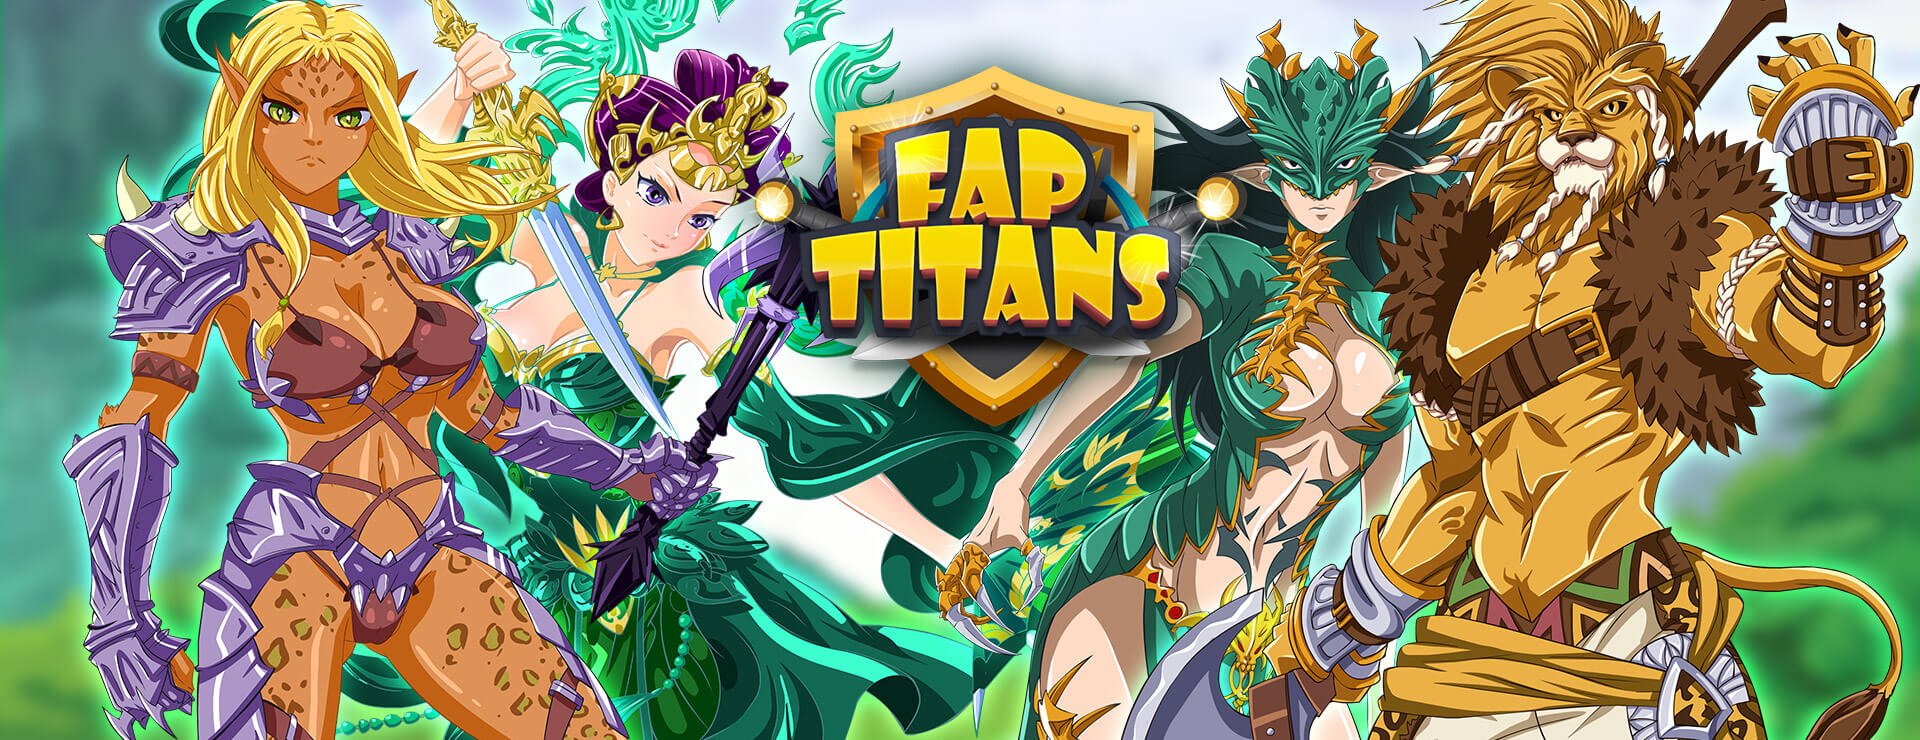 Fap Titans Game - Casual 遊戲